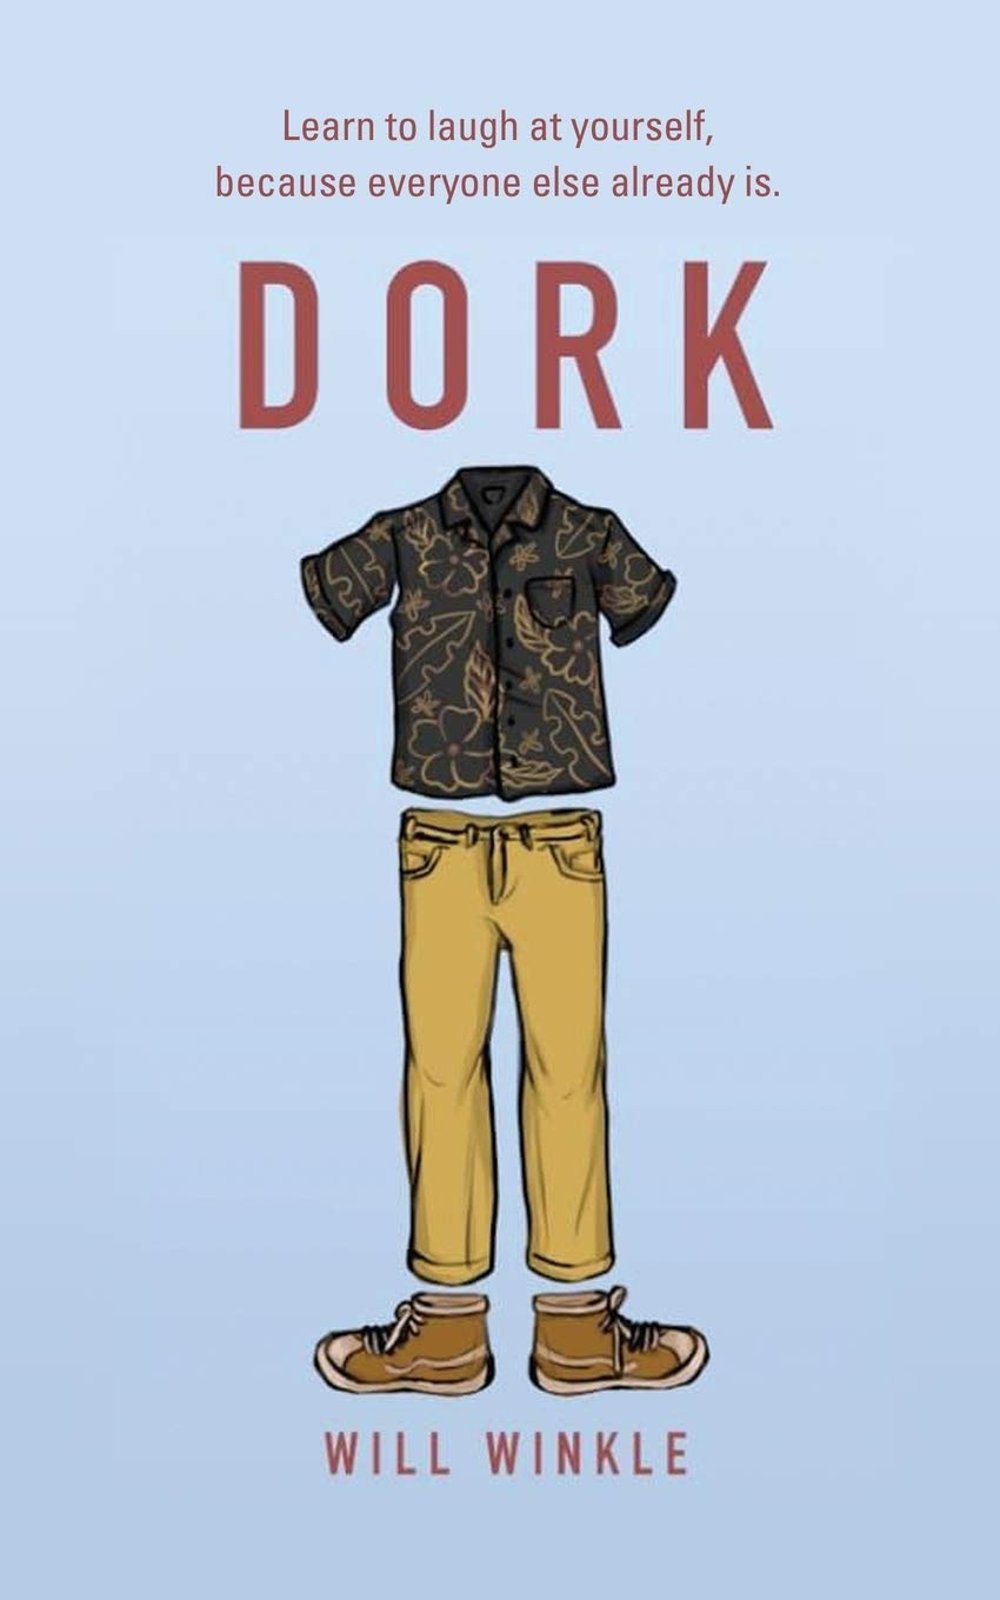 Dork by Will Winkle